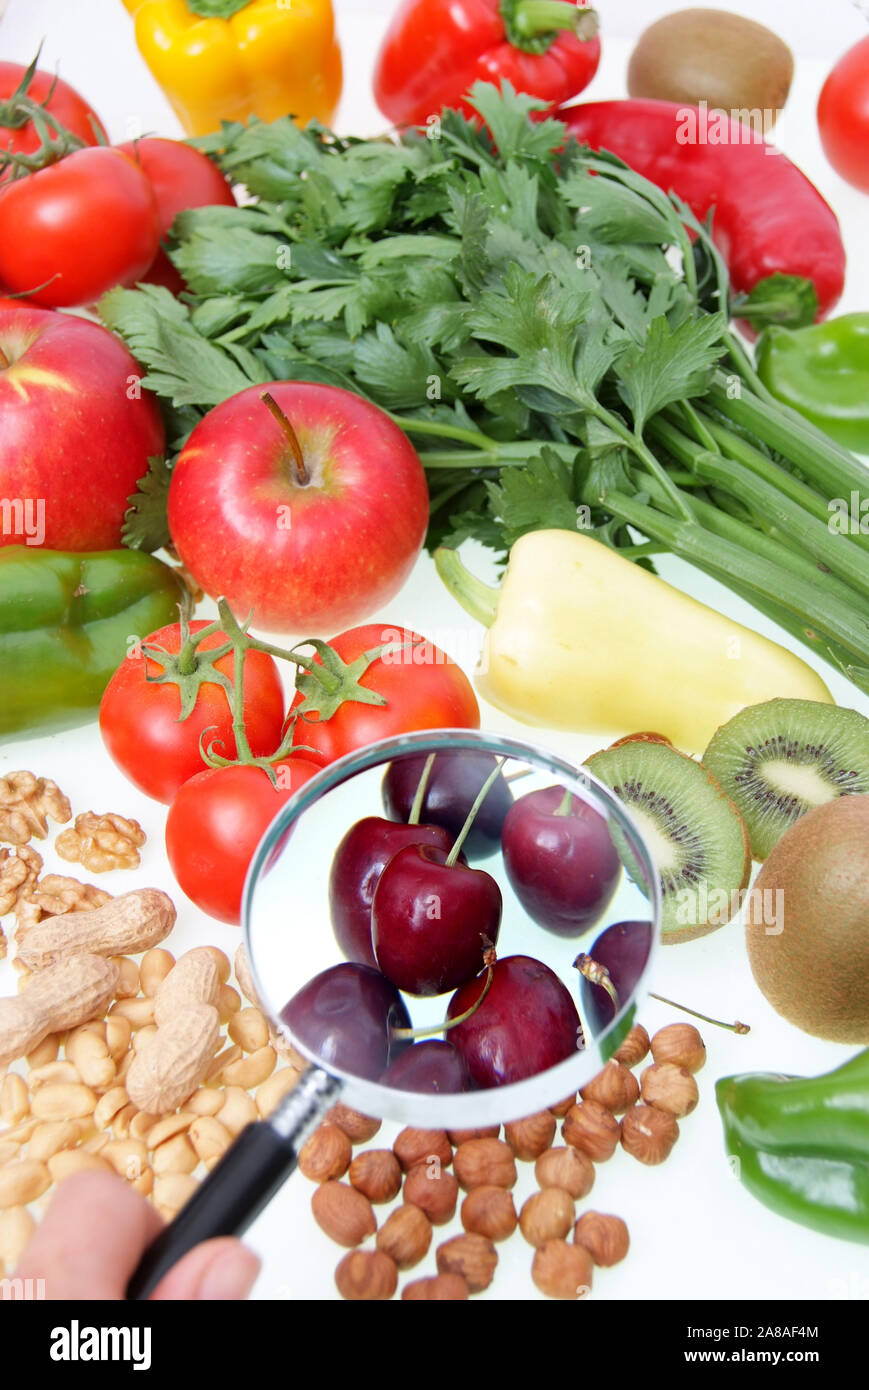 Symbolfoto gesunde Ernährung, Obst, Gemüse, Nüsse, Kirschen, Erdnüsse, Paproka, Tomaten, Rettich, Walnüsse, Kiwi, Apfel, Stock Photo